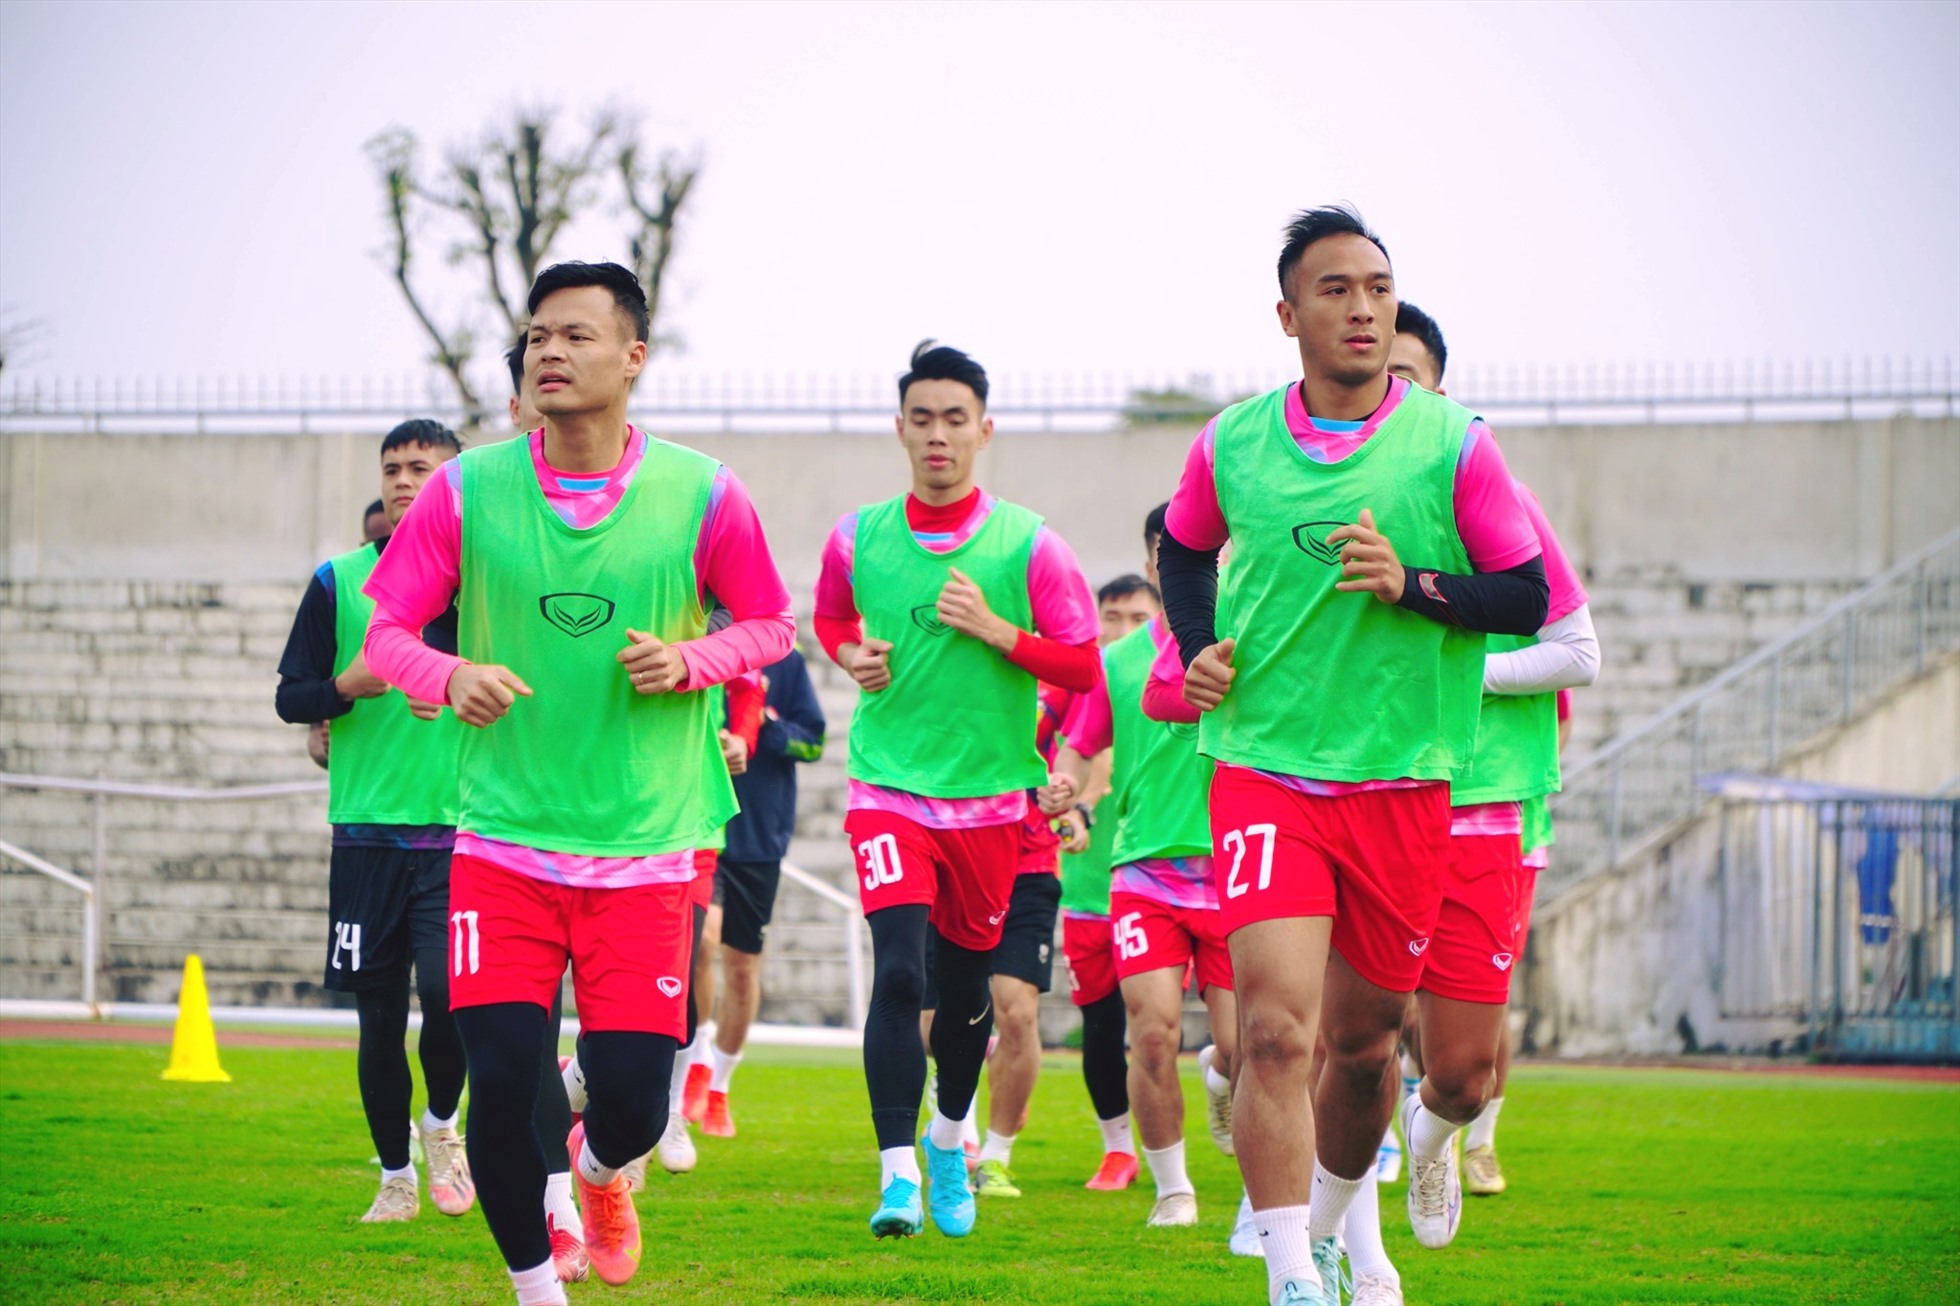 Câu lạc bộ Hồng Lĩnh Hà Tĩnh luôn trong trang thái tập trung cao độ và sẵn sàng ra sân. Ảnh: HLHT FC